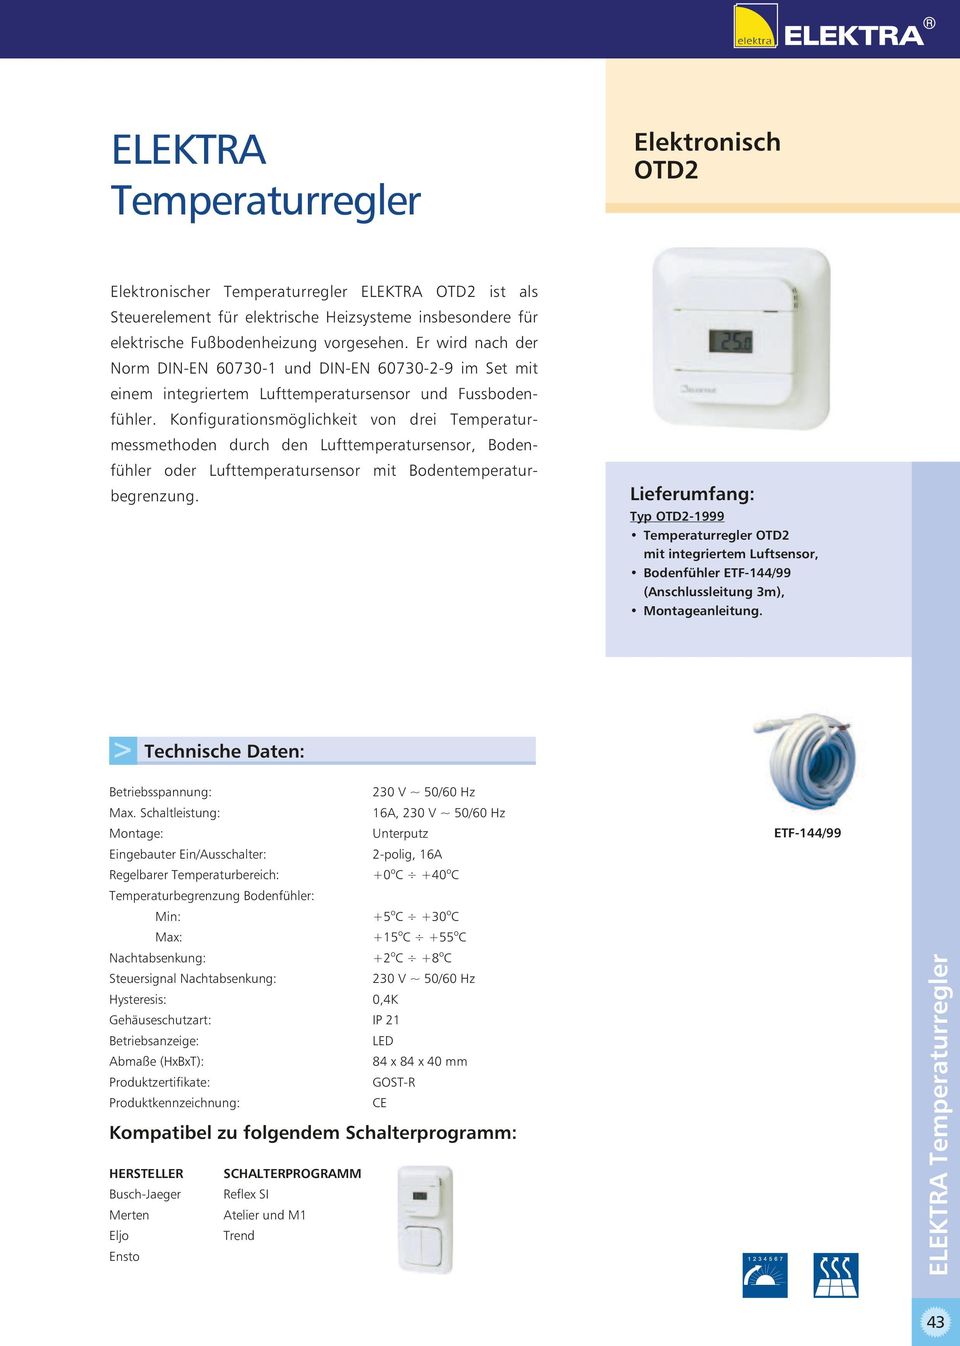 Knfiguratinsmöglichkeit vn drei Temperaturmessmethden durch den Lufttemperatursensr, Bdenfühler der Lufttemperatursensr mit Bdentemperaturbegrenzung.